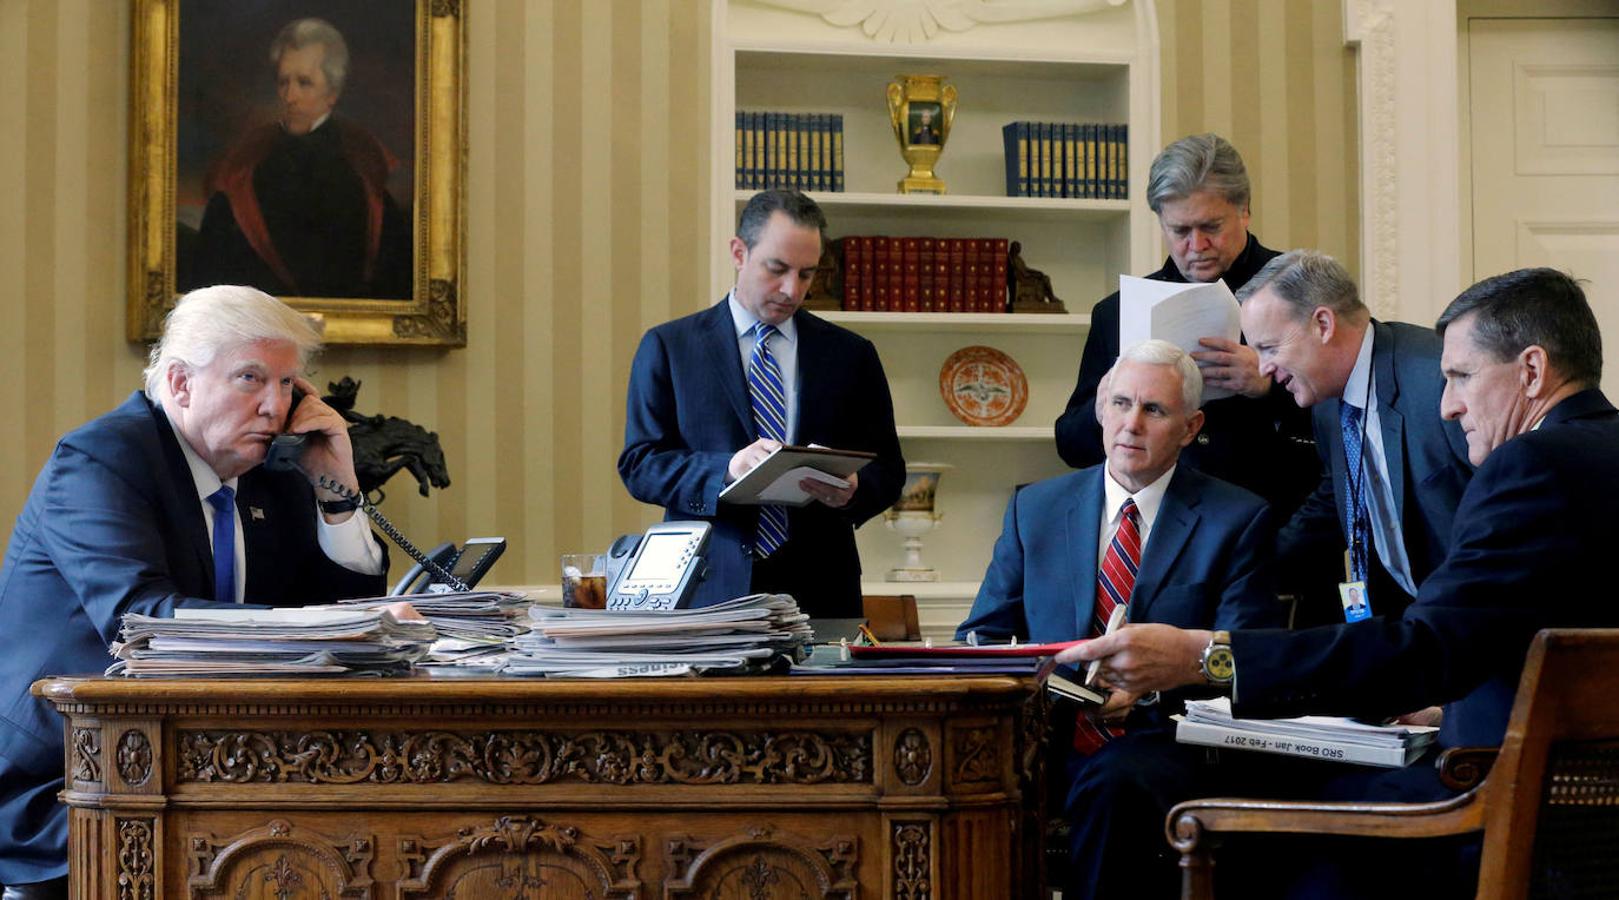 El vicepresidente Pence, en el centro, en una reunión dentro del Despacho Oval